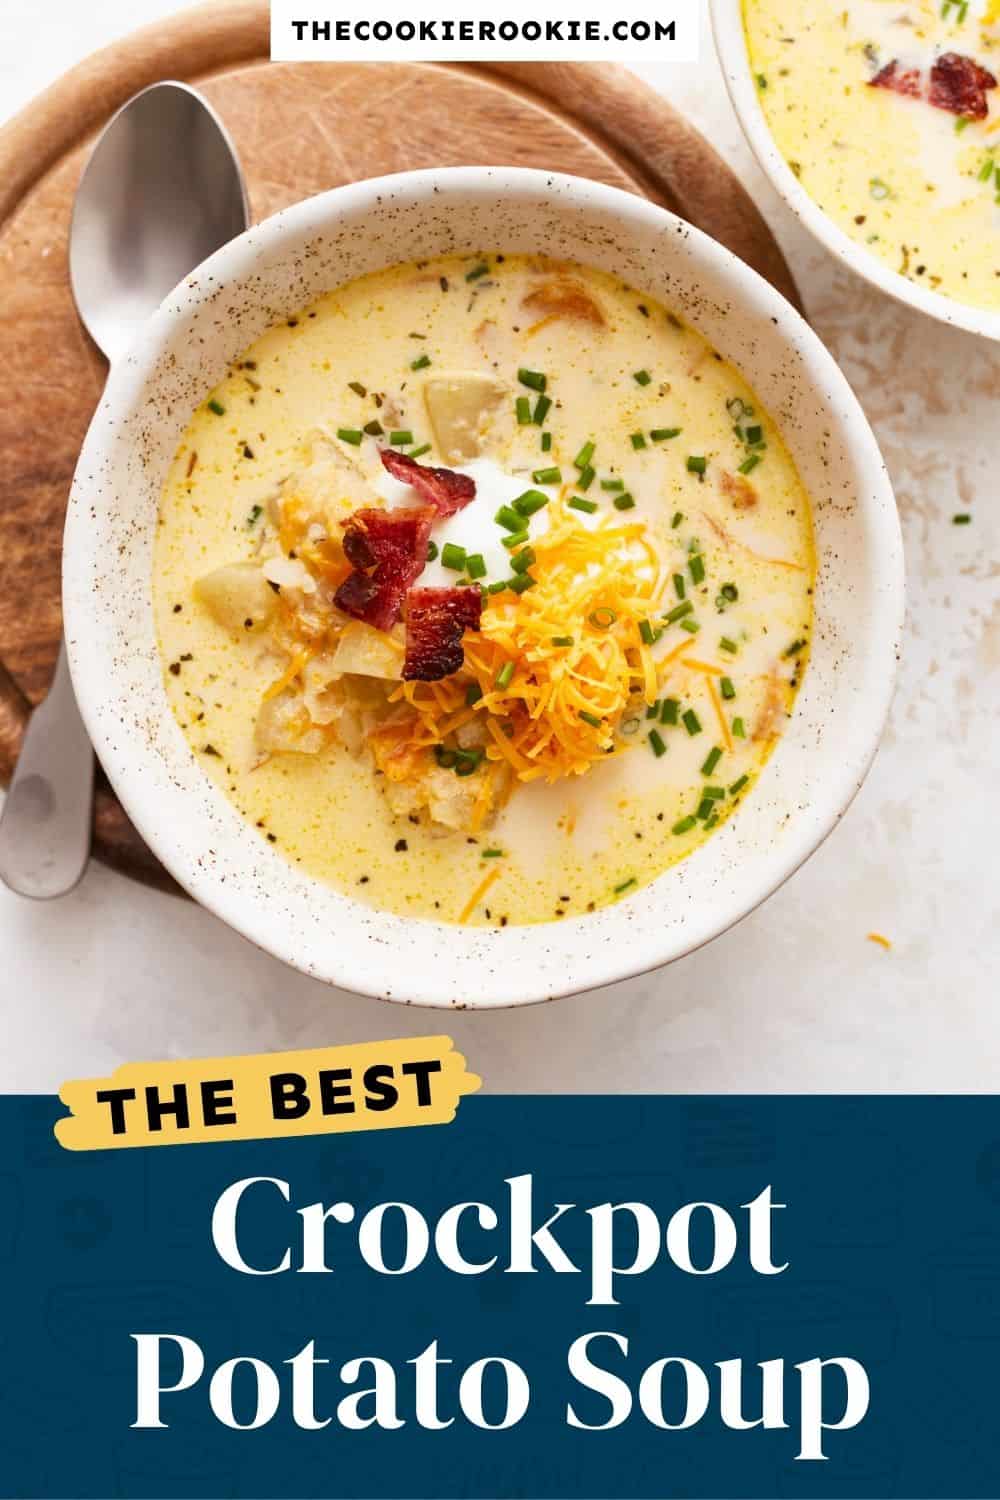 Crockpot Potato Soup Recipe - The Cookie Rookie®